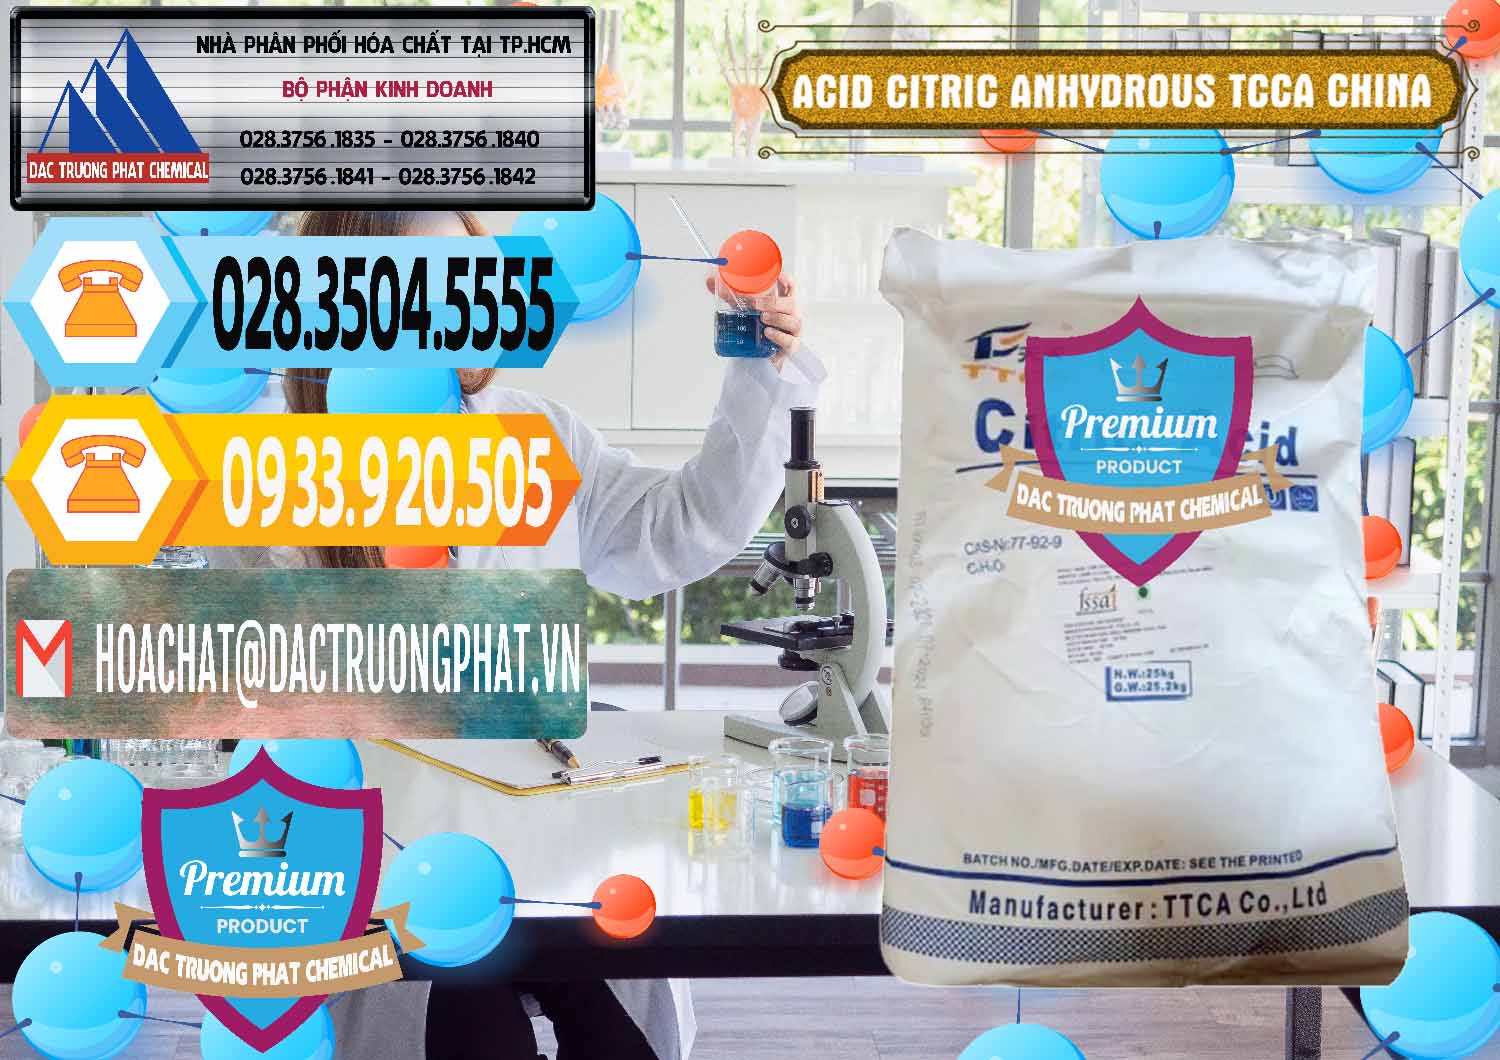 Nơi bán _ cung ứng Acid Citric - Axit Citric Anhydrous TCCA Trung Quốc China - 0442 - Cty chuyên phân phối ( kinh doanh ) hóa chất tại TP.HCM - hoachattayrua.net